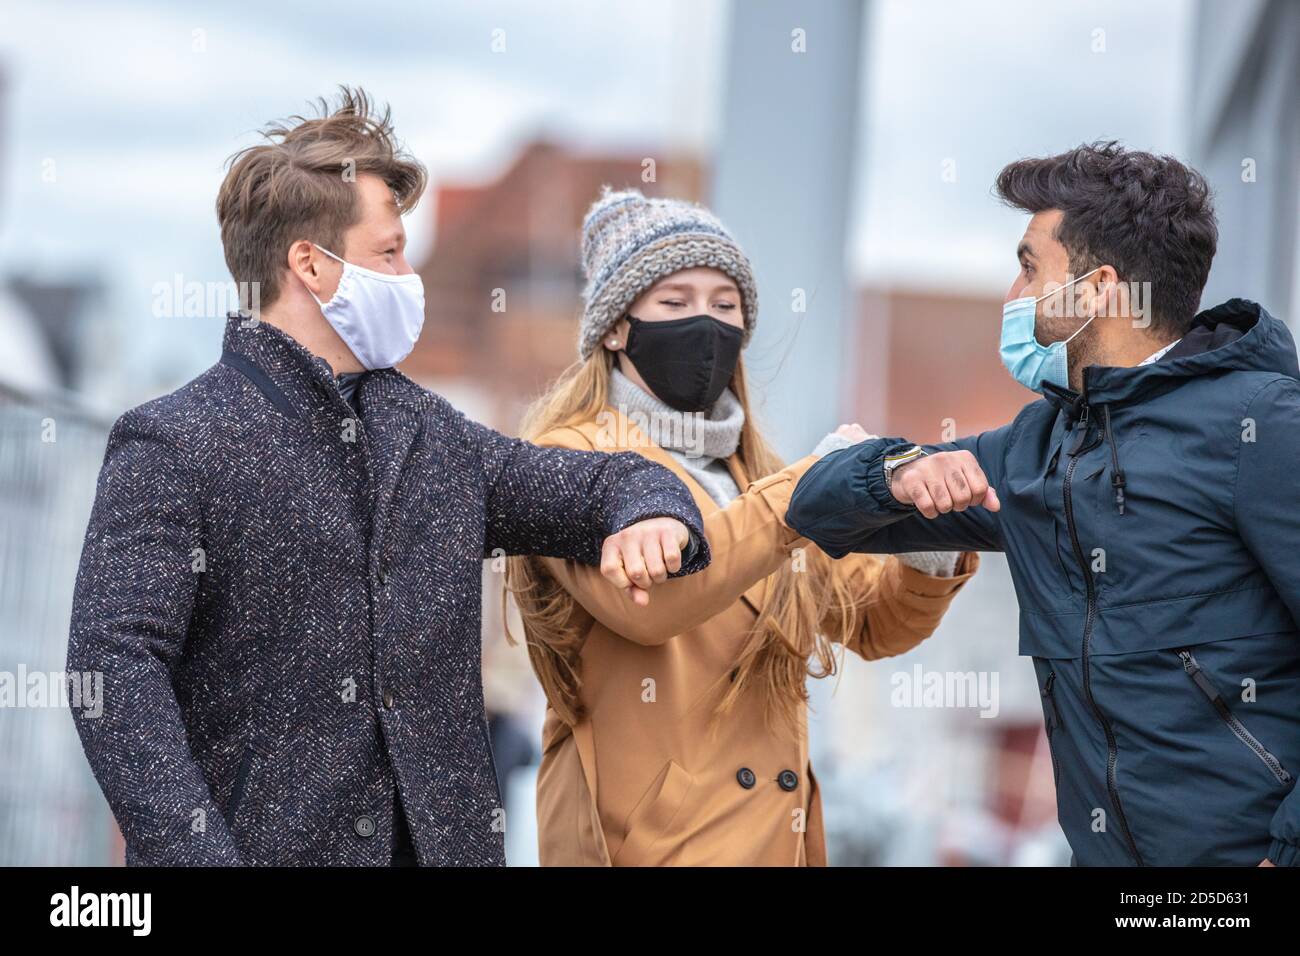 Zwei Männer und eine Frau begrüssen sich mit dem Ellenbogen. Corona-Zeit mit alltäglichen Masken in der kalten Jahreszeit in der Stadt. Banque D'Images